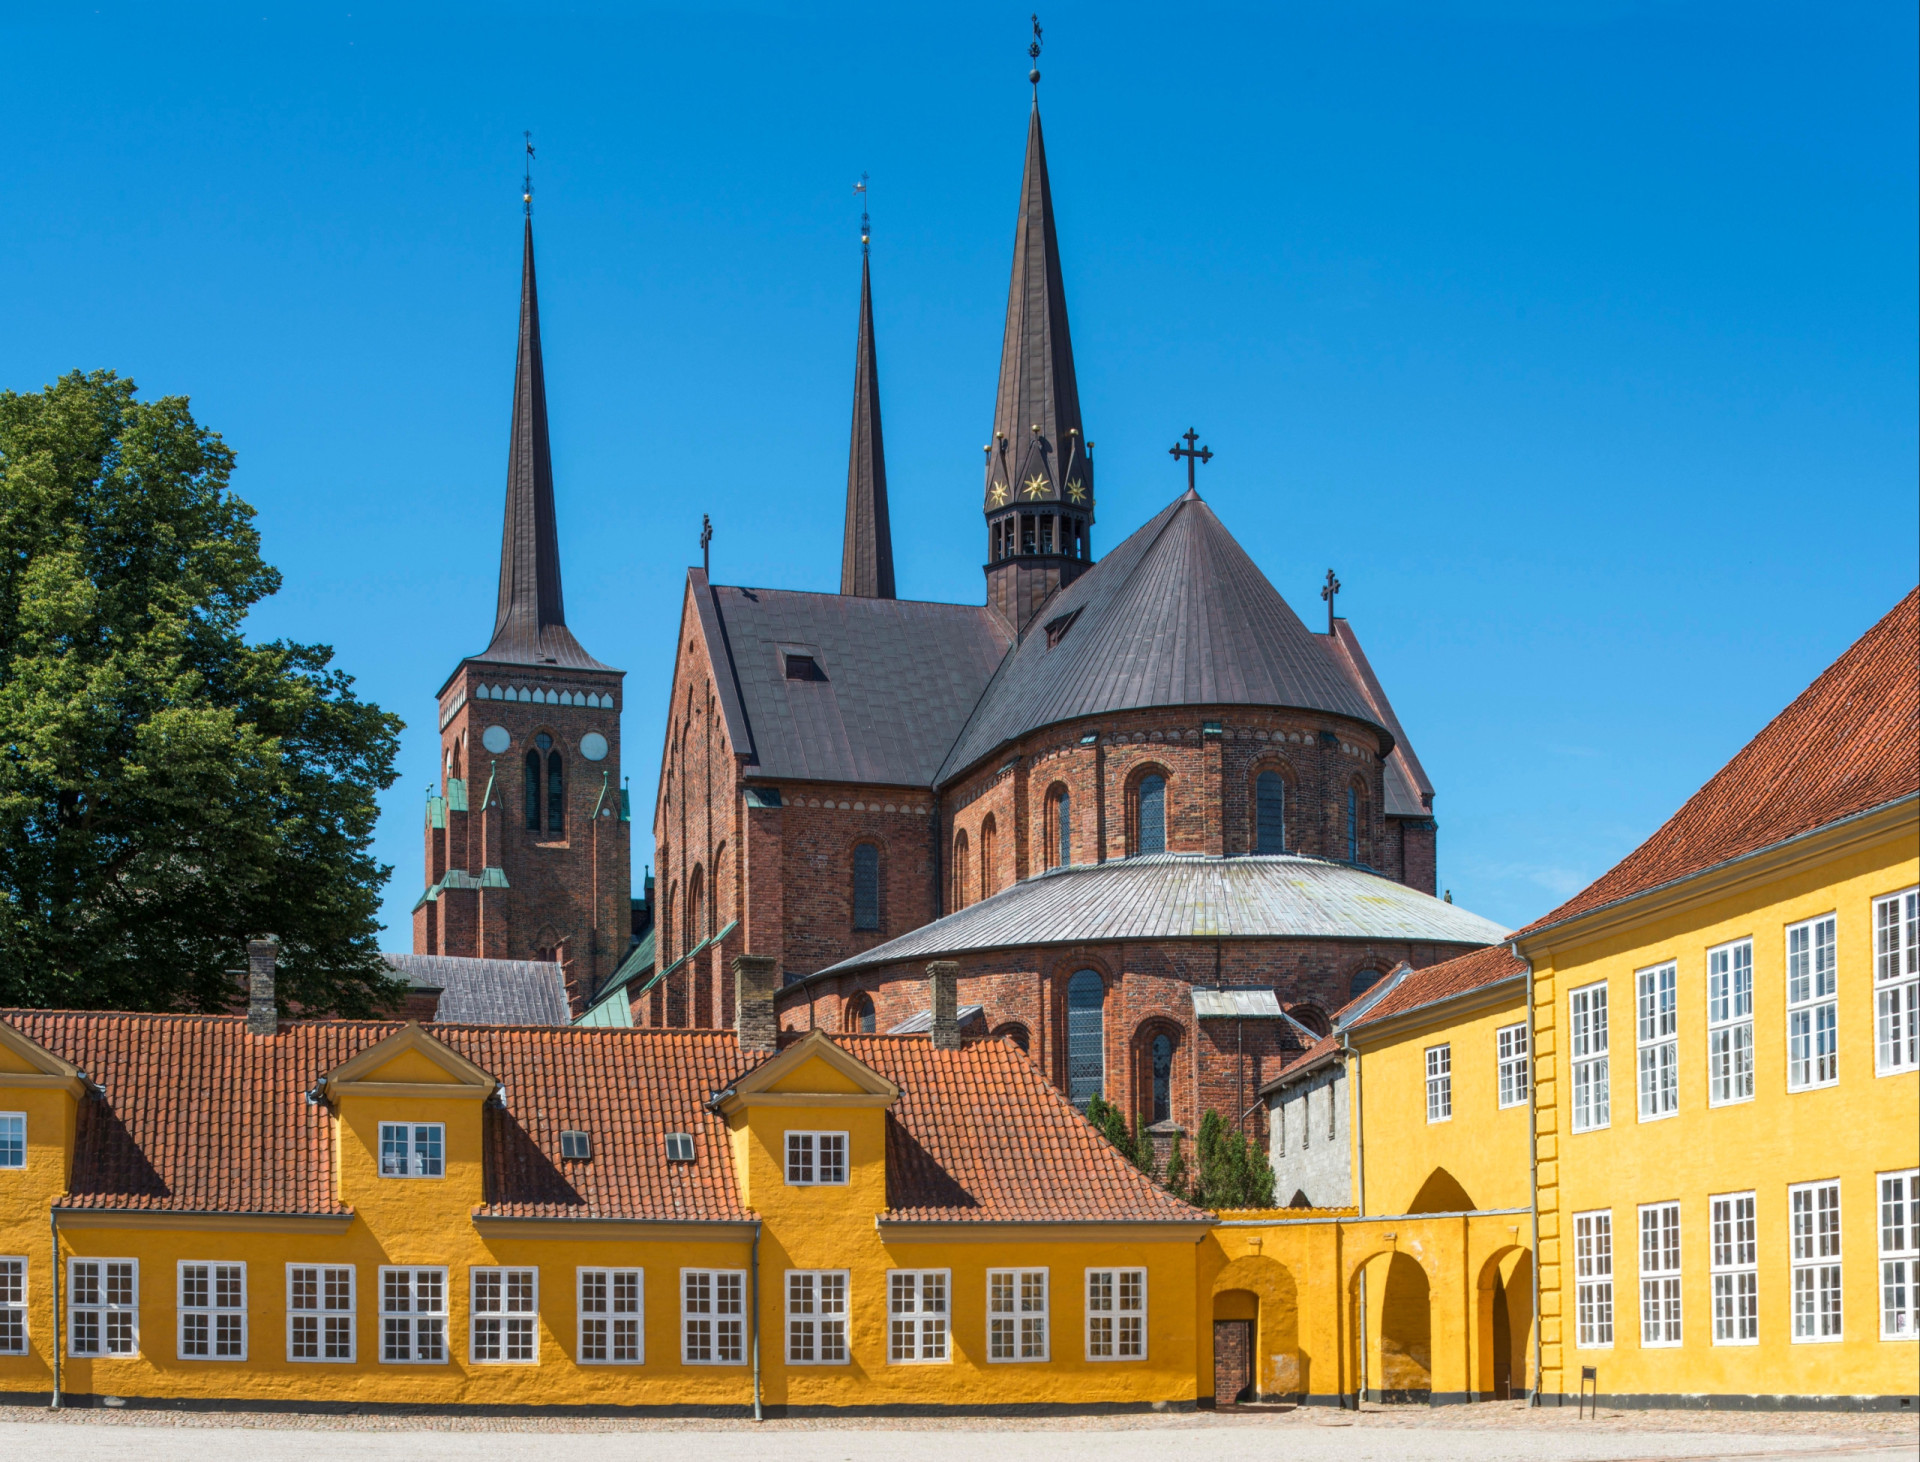 <p>Classée au patrimoine mondiale de l'UNESCO, c'est l'une des plus importantes et imposantes cathédrales du Danemark, c'est ici qu'avaient lieu les funérailles royales officielles des monarques danois. C'est aussi l'un des meilleurs exemples d'architecture gothique en briques de Scandinavie.</p><p><a href="https://www.msn.com/fr-fr/community/channel/vid-7xx8mnucu55yw63we9va2gwr7uihbxwc68fxqp25x6tg4ftibpra?cvid=94631541bc0f4f89bfd59158d696ad7e">Suivez-nous et accédez tous les jours à du contenu exclusif</a></p>